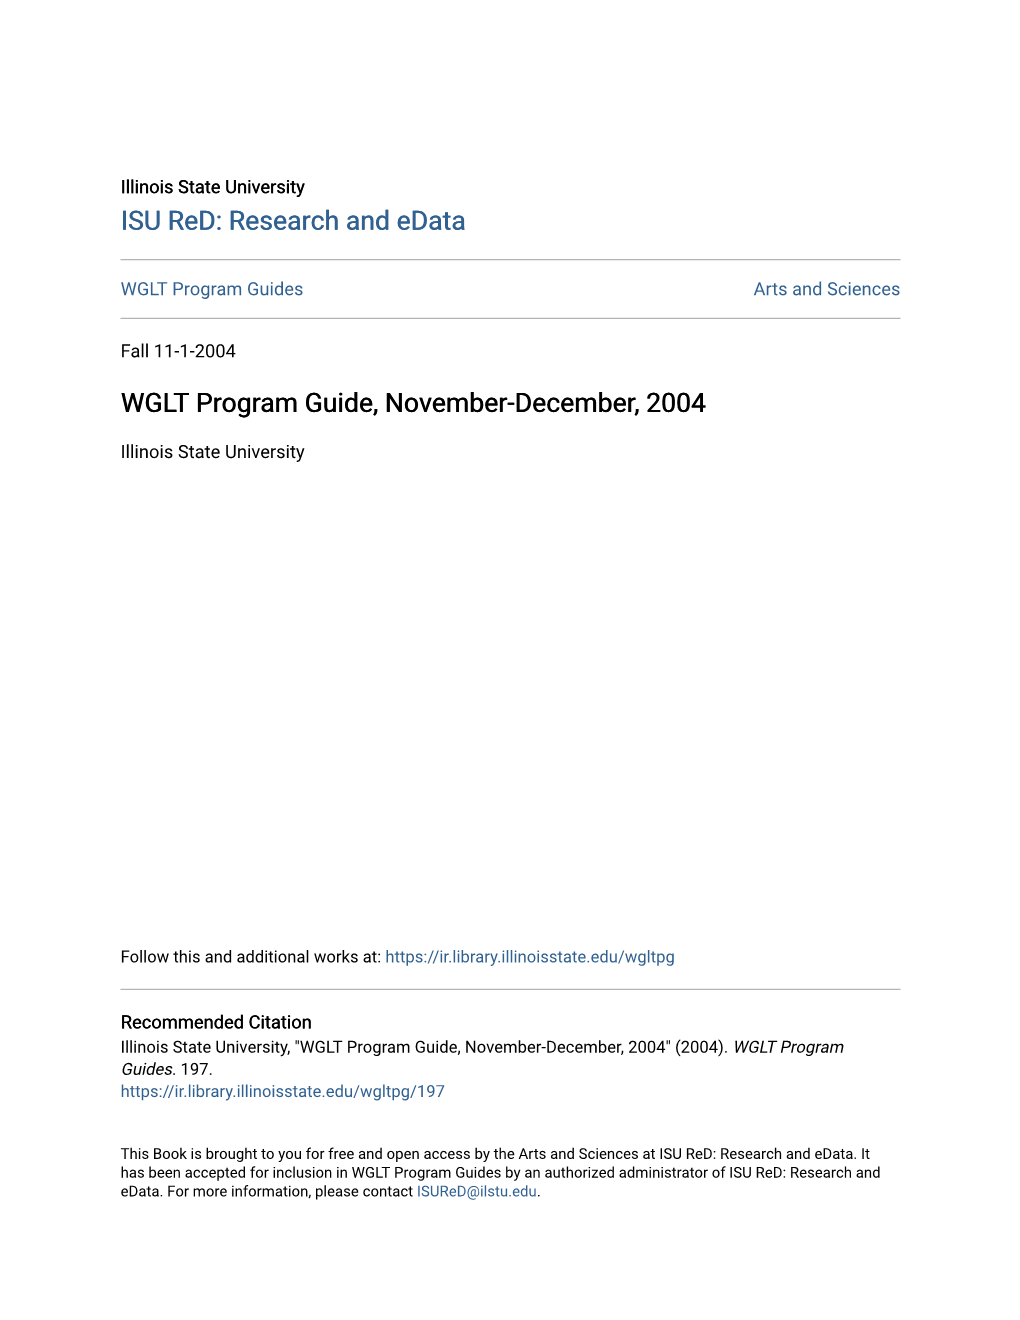 WGLT Program Guide, November-December, 2004